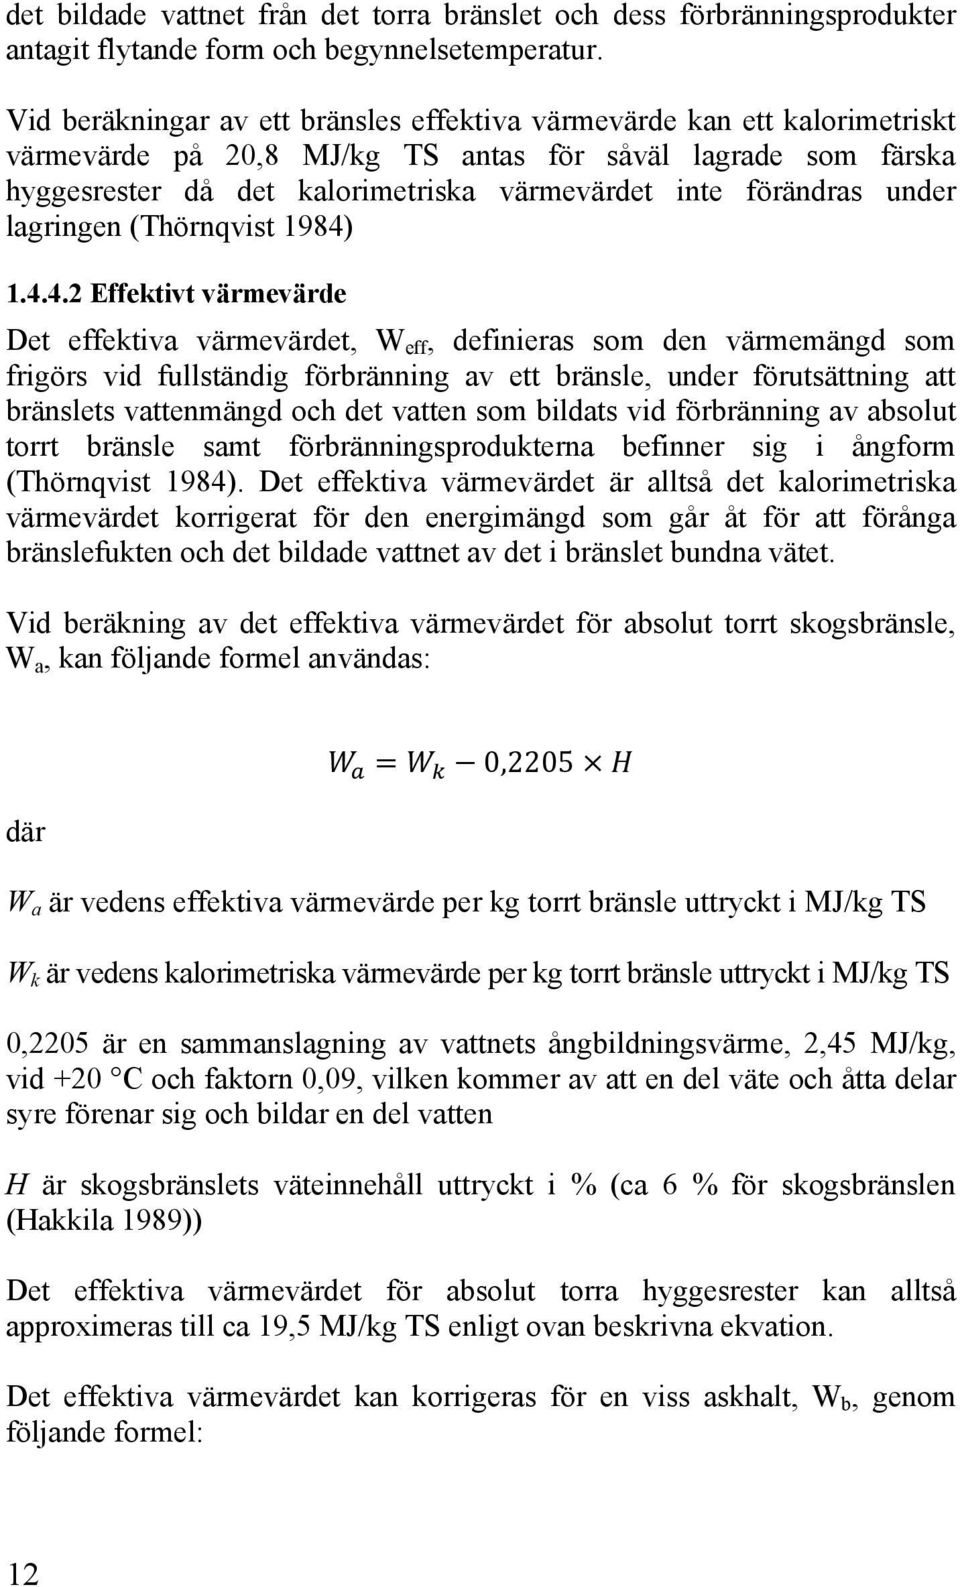 förändras under lagringen (Thörnqvist 1984)